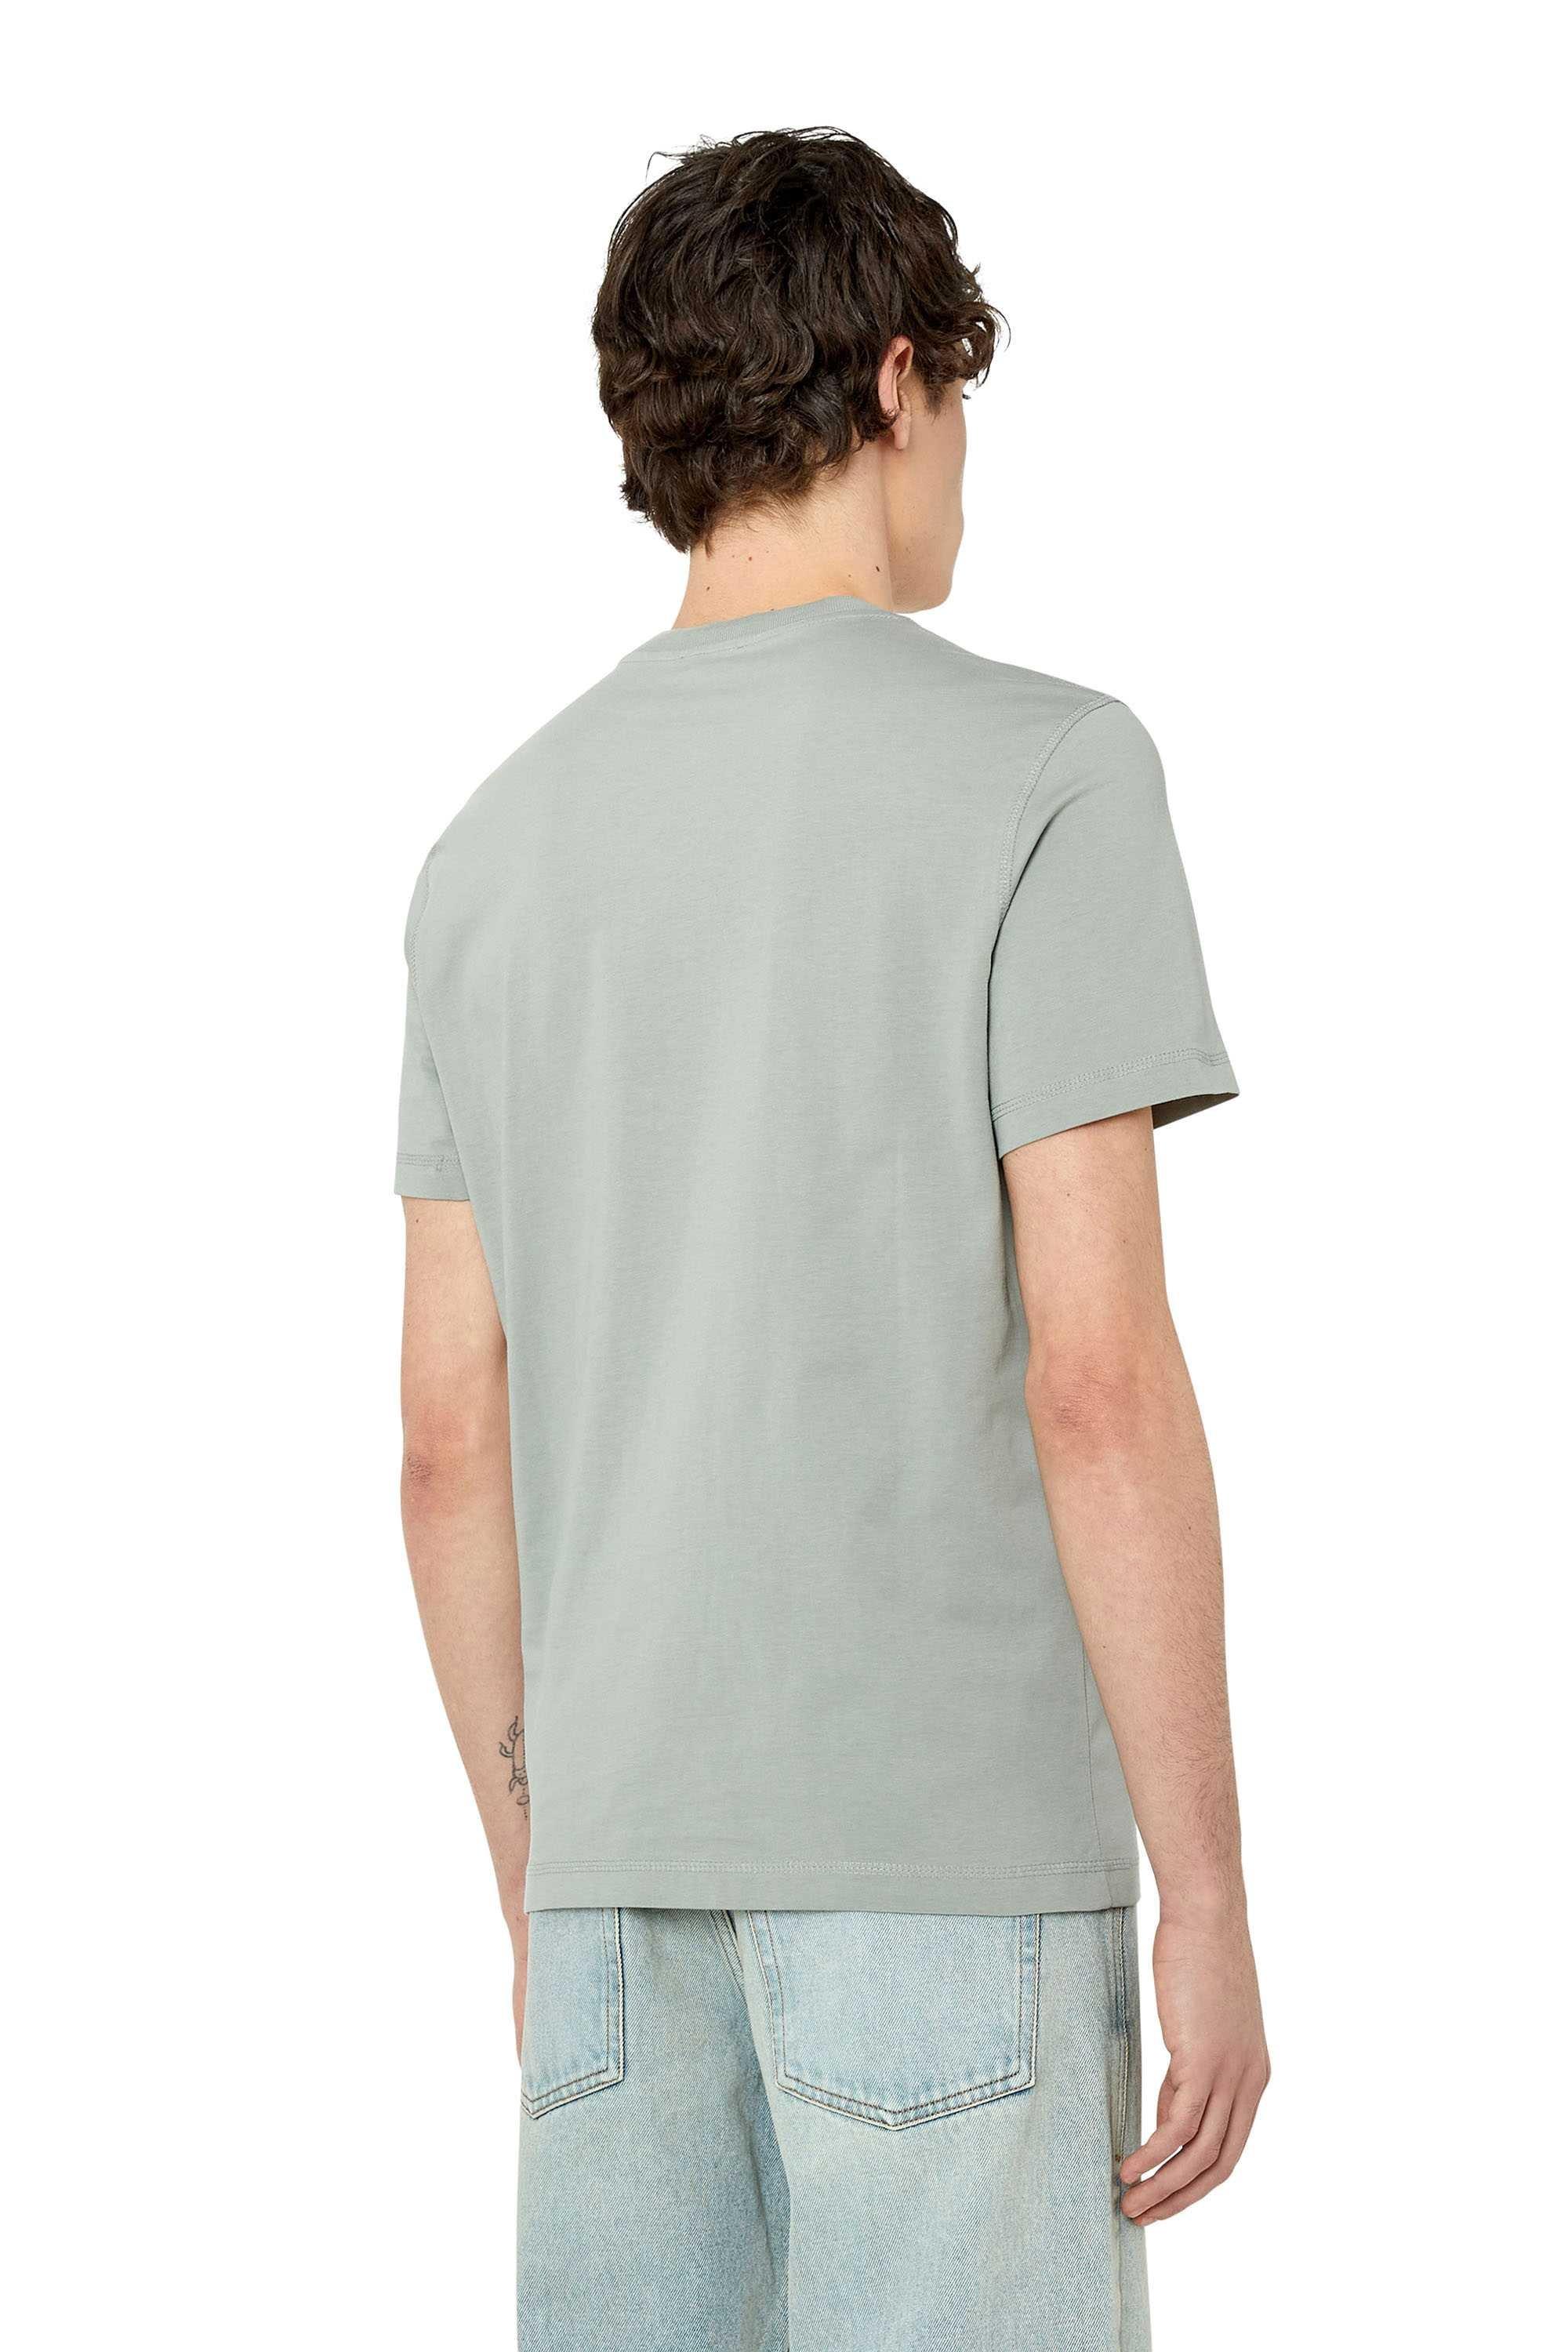 DIESEL  T-Shirt  Bequem sitzend-T-DIEGOR-G10 